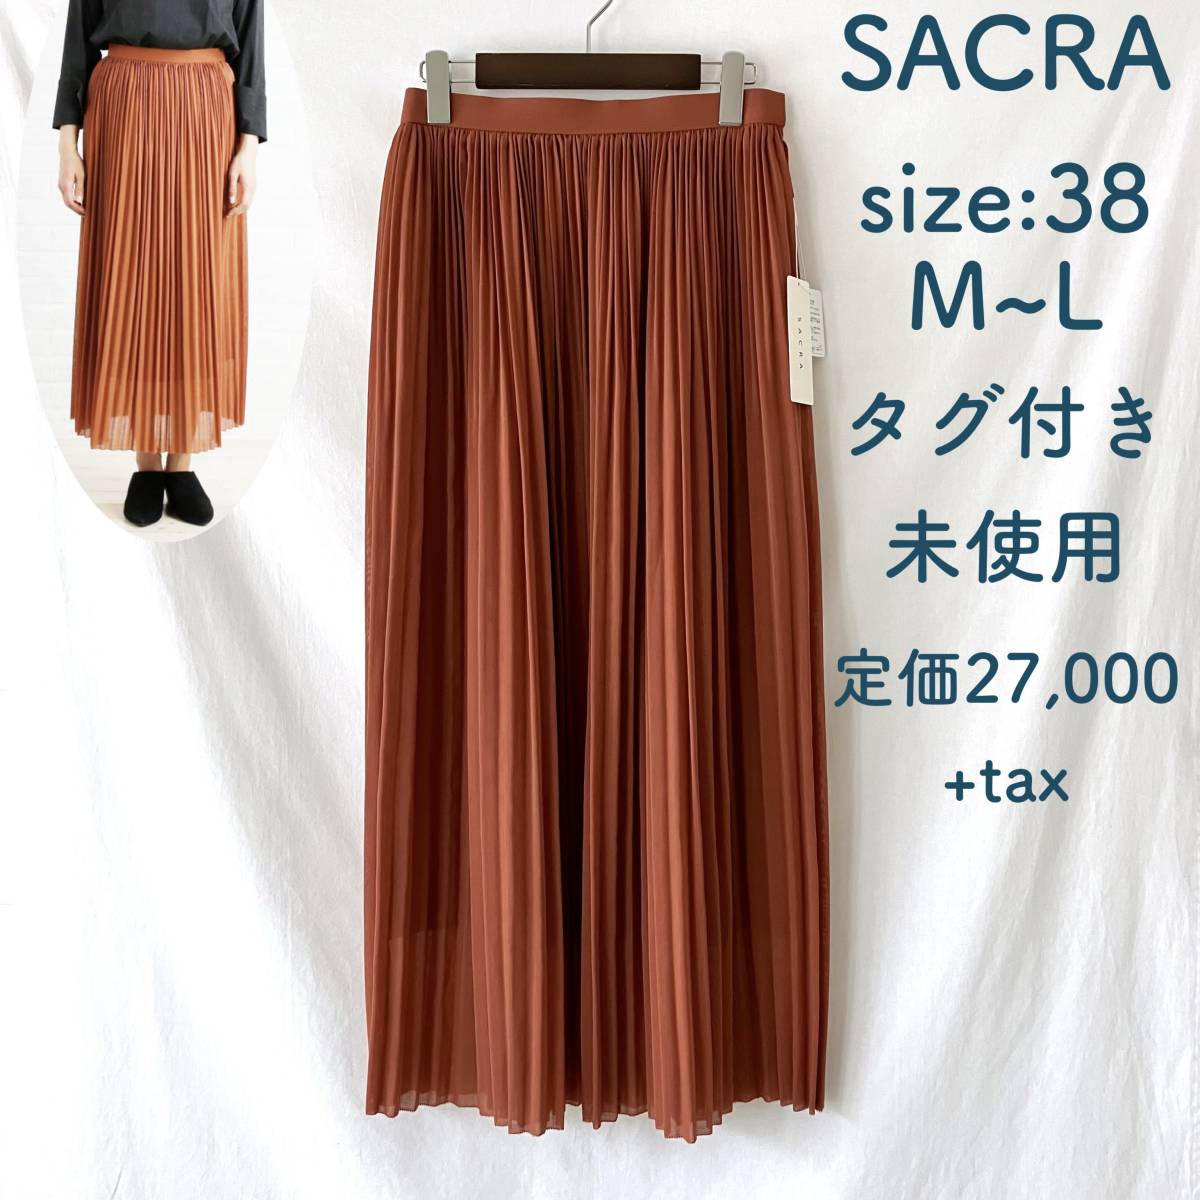 ■ 新品未使用 ■ 定価 29,700円 ■ SACRA ■ ウール混 ロングプリーツスカート ■ 38 ■ BRICK ■ /